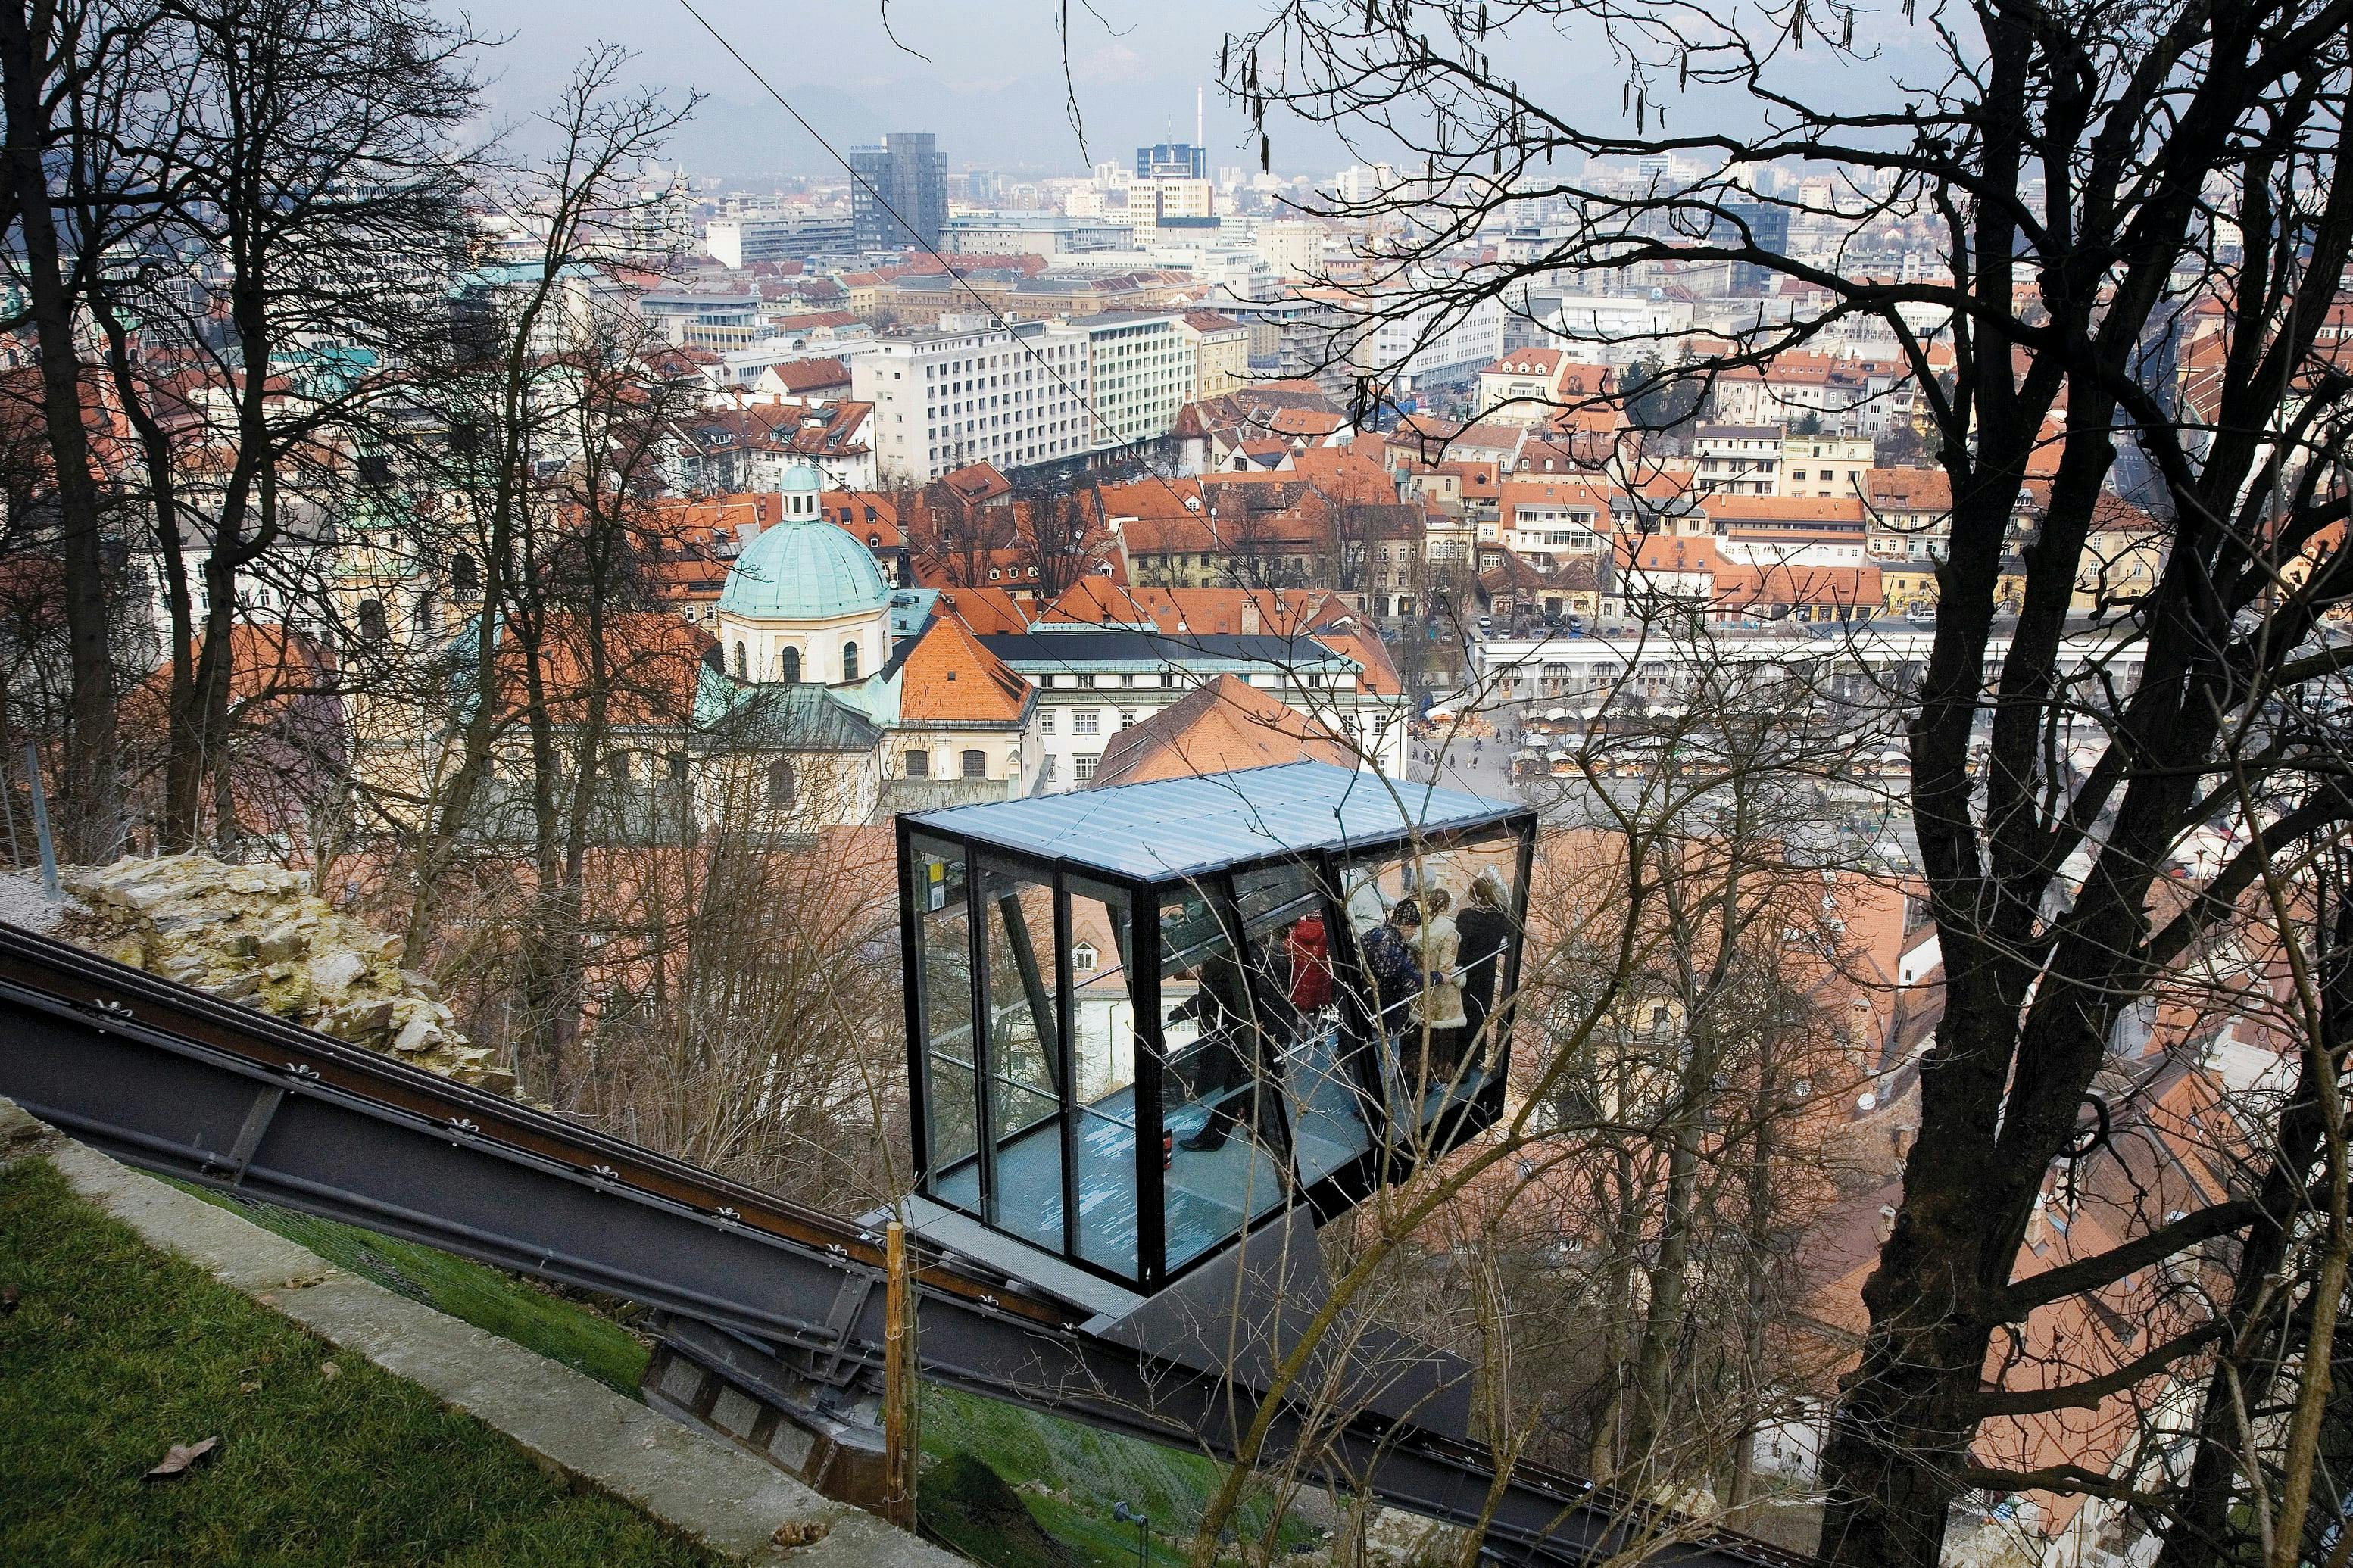 Ljubljana Tour & Castle Funicular